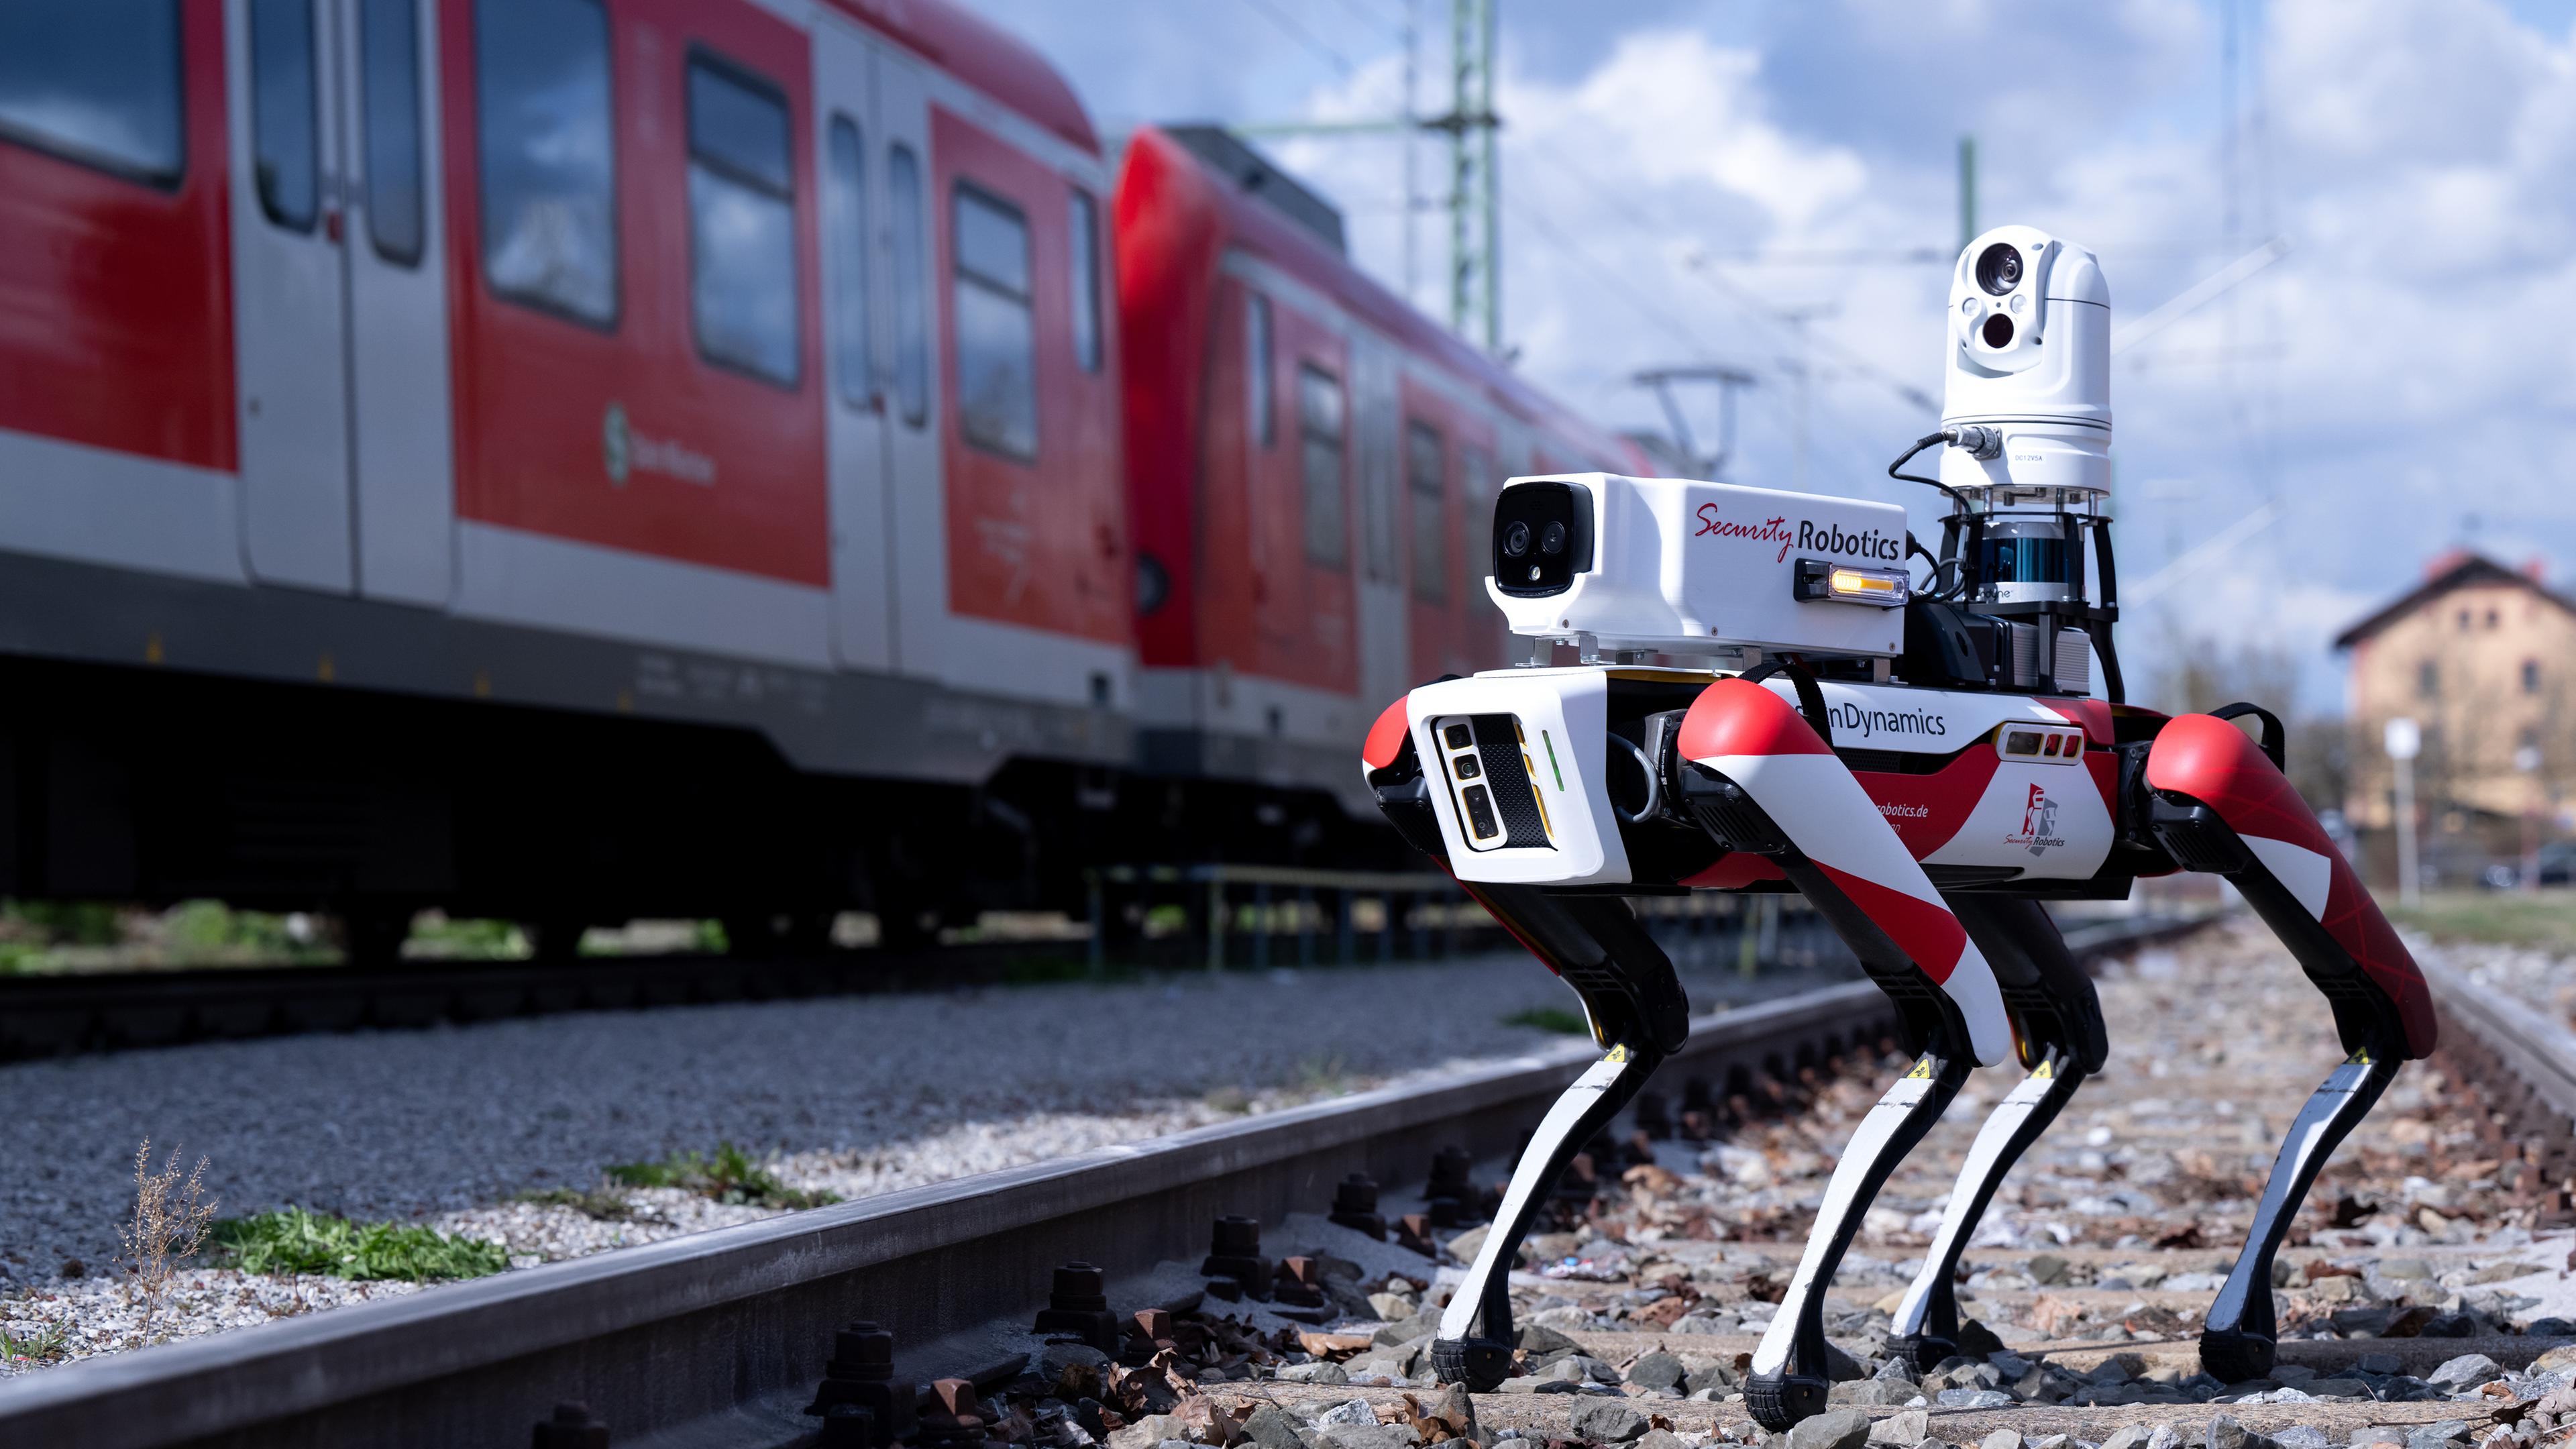 Der Roboter "Spot" der Deutschen Bahn läuft bei einem Pressetermin zwischen abgestellten S-Bahnen entlang.